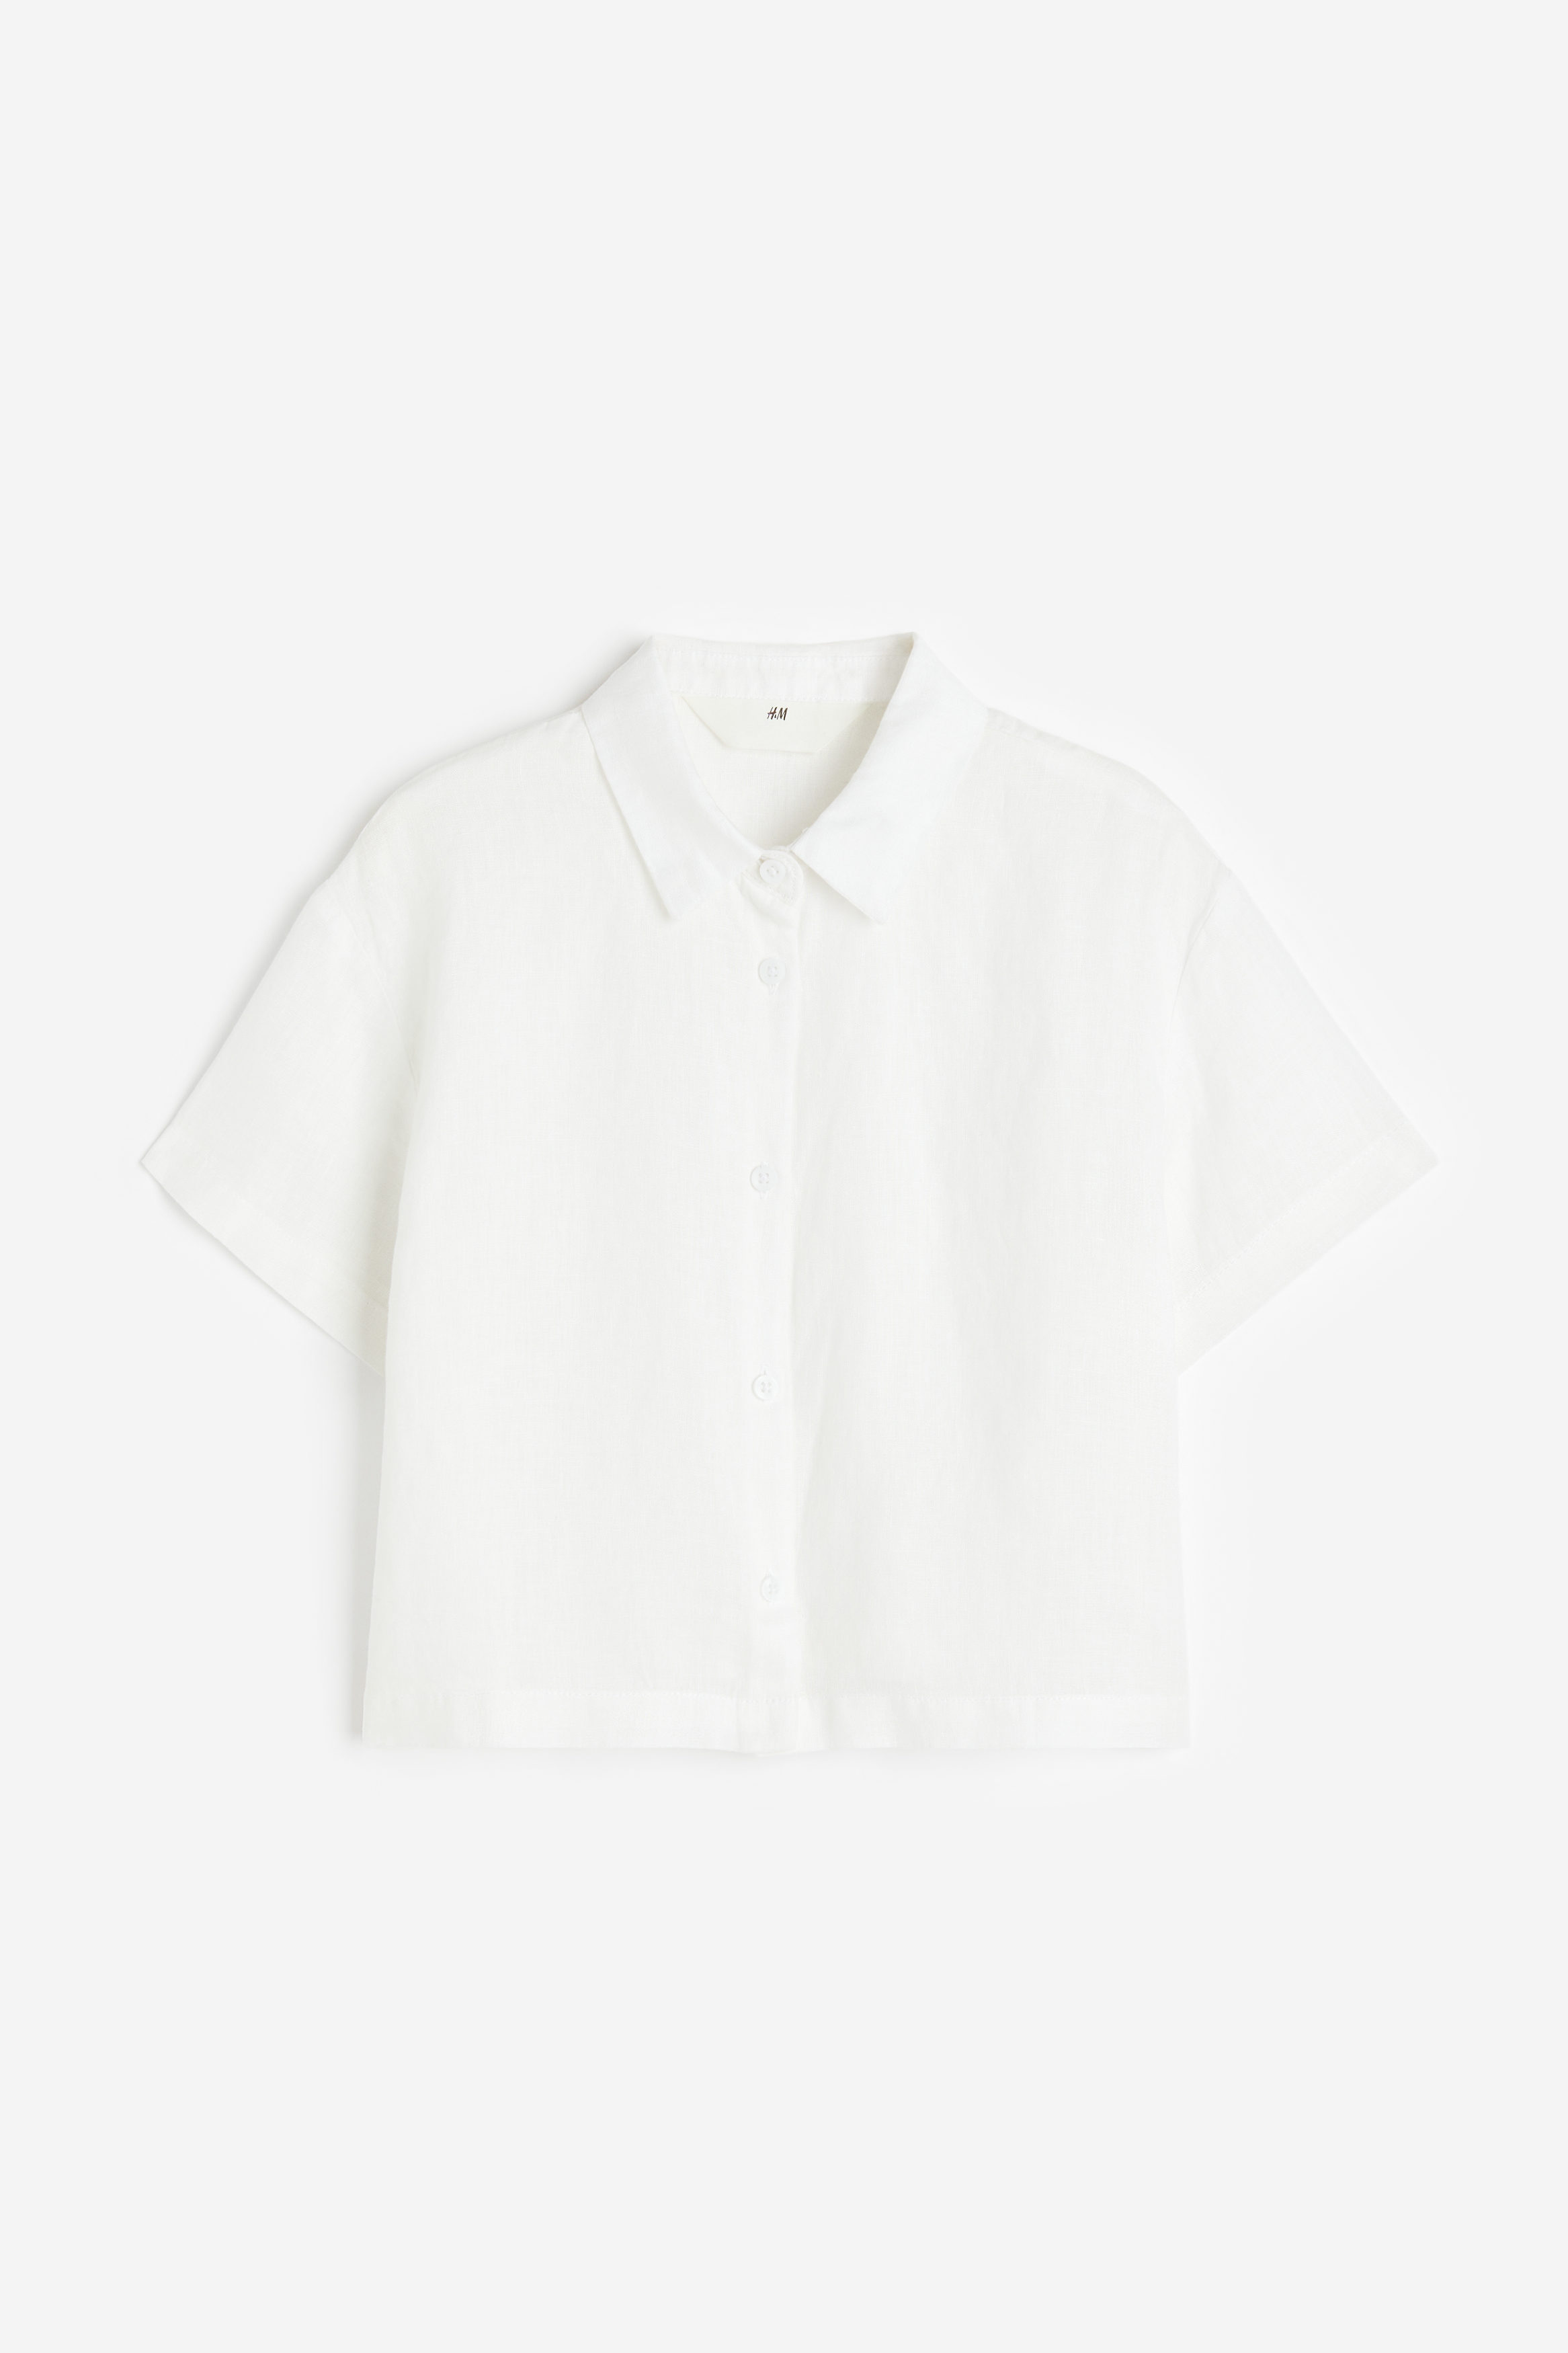 Billede af H&M Skjorte I Hør Hvid, Skjorter & Bluser. Farve: White størrelse 134